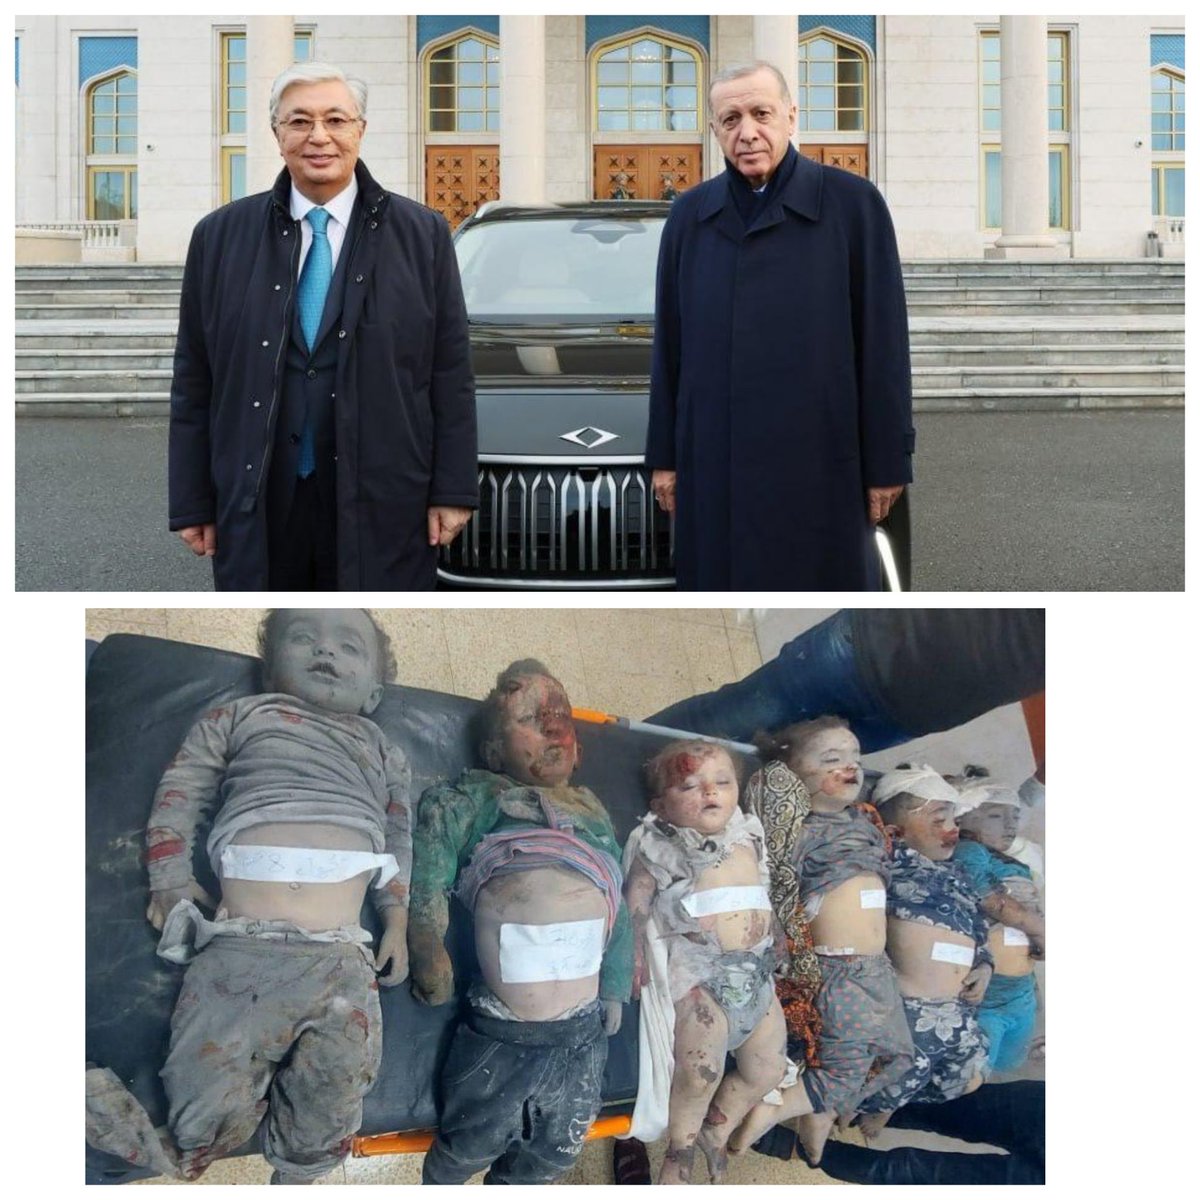 Halkın kesesinden Kazakistan cumhurbaşkanına TOGG hediye edenler Gazze için sadece miting yaptı.. AKP'lilere duyurulur..